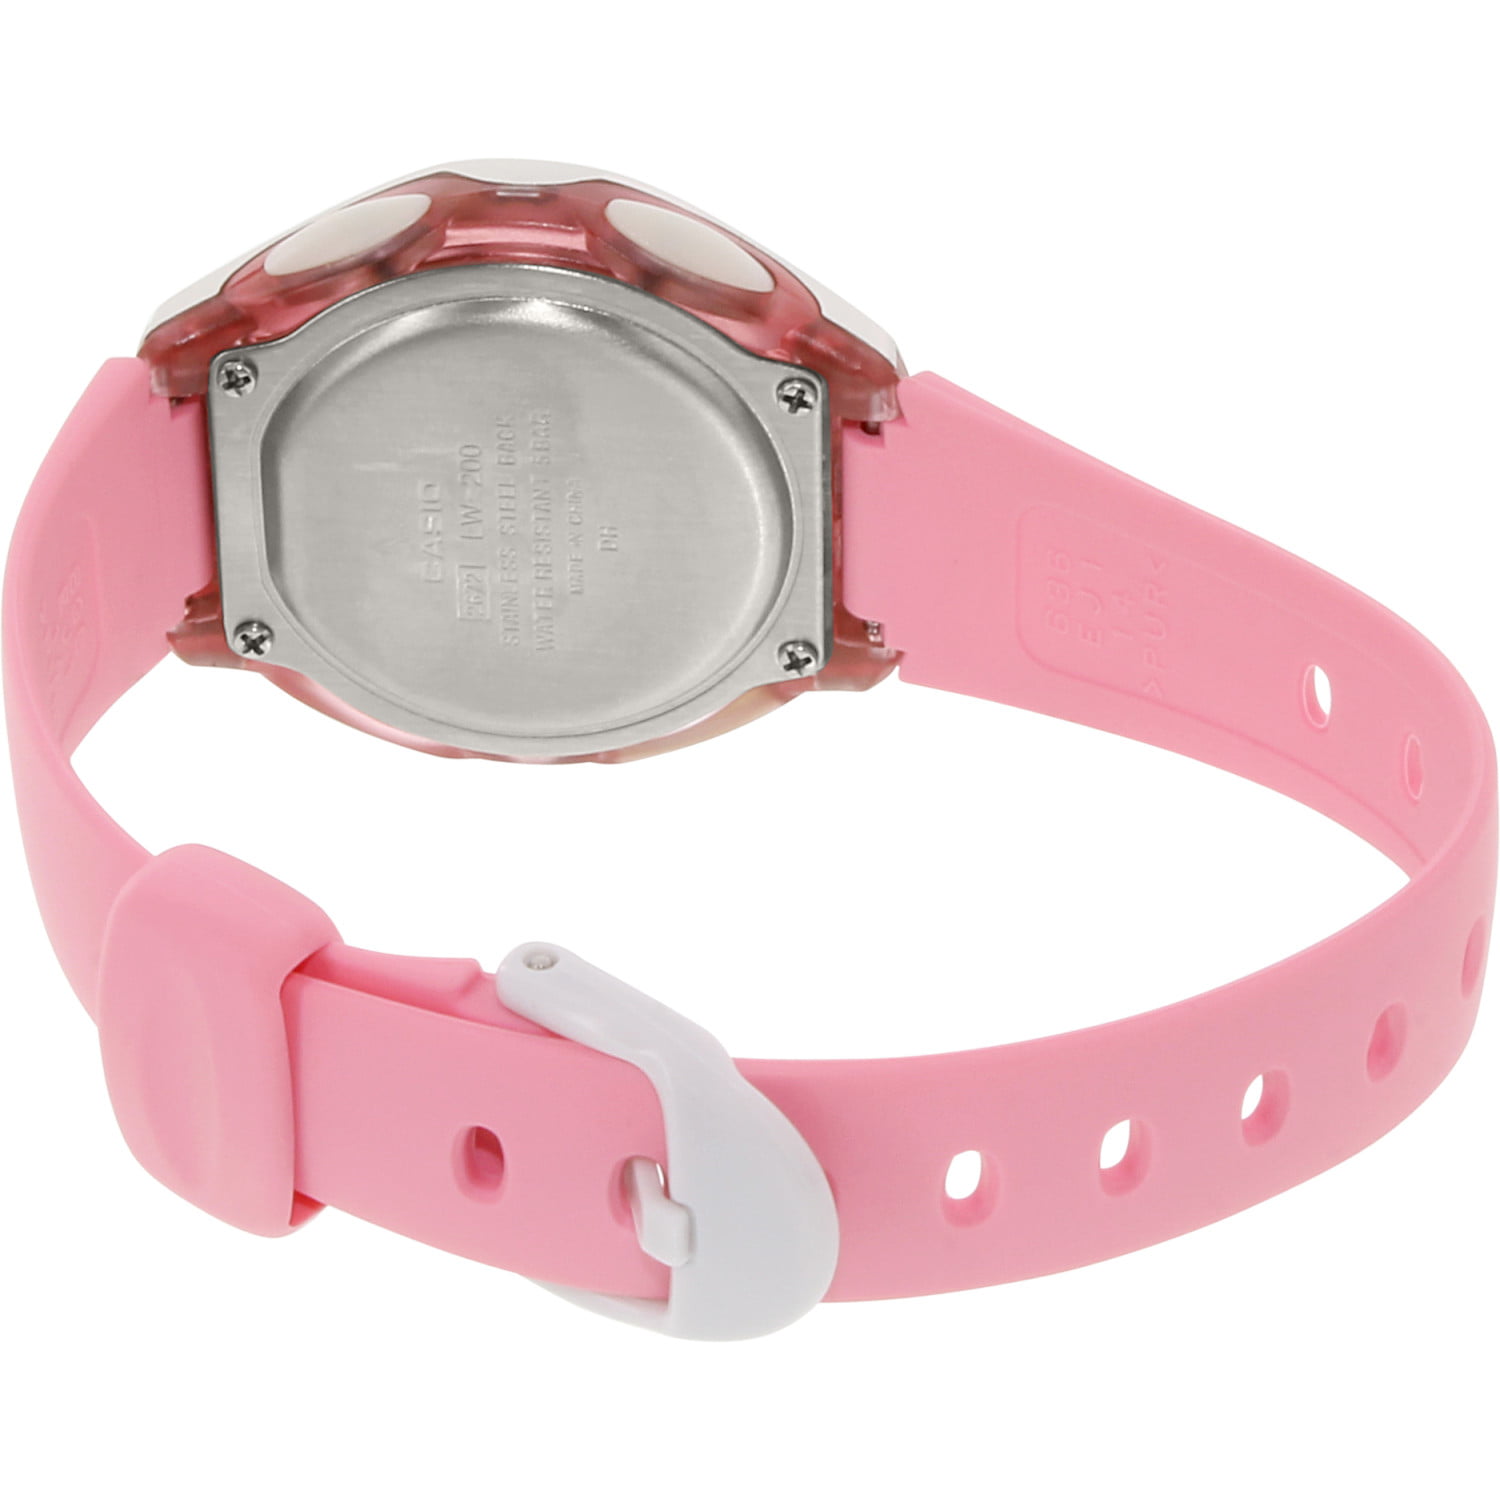 Reloj de pulsera Casio Youth LW-200 de cuerpo color rosa, digital, para  mujer, fondo gris, con correa de resina color rosa, dial rosa, subesferas  color beige y rosa y plateado, minutero/segundero rosa